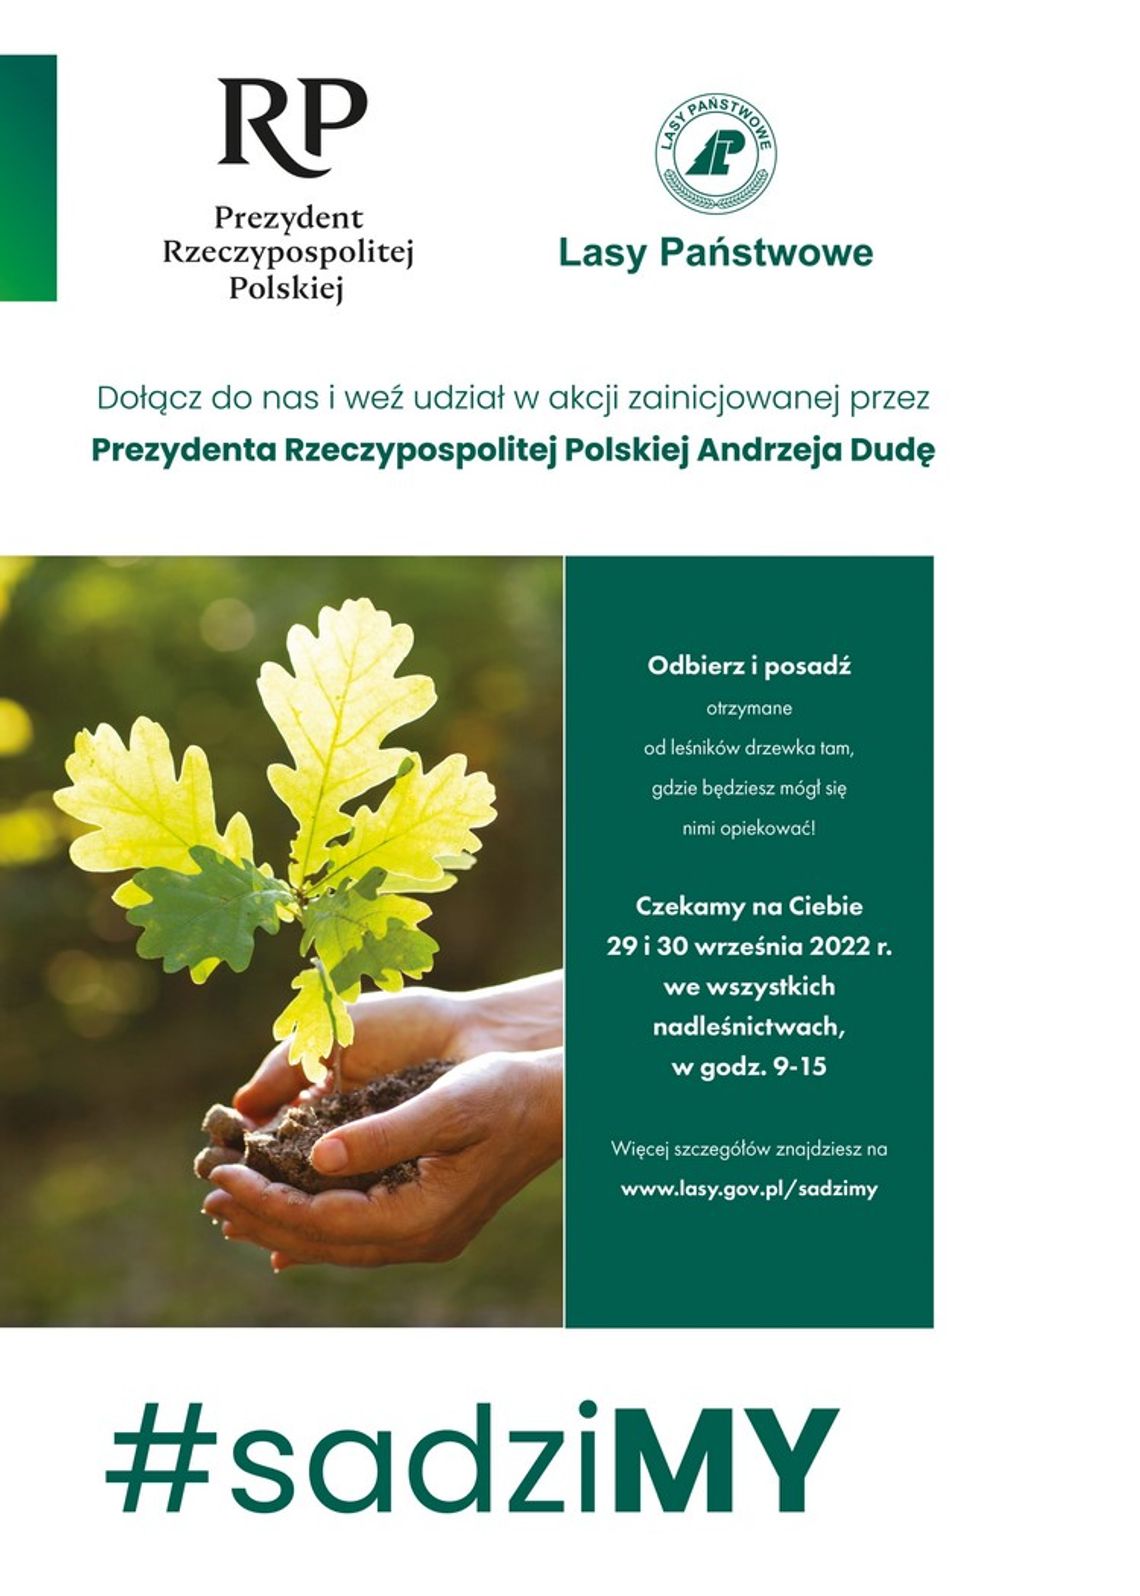 Nadleśnictwo Starachowice rozda darmowe sadzonki drzew